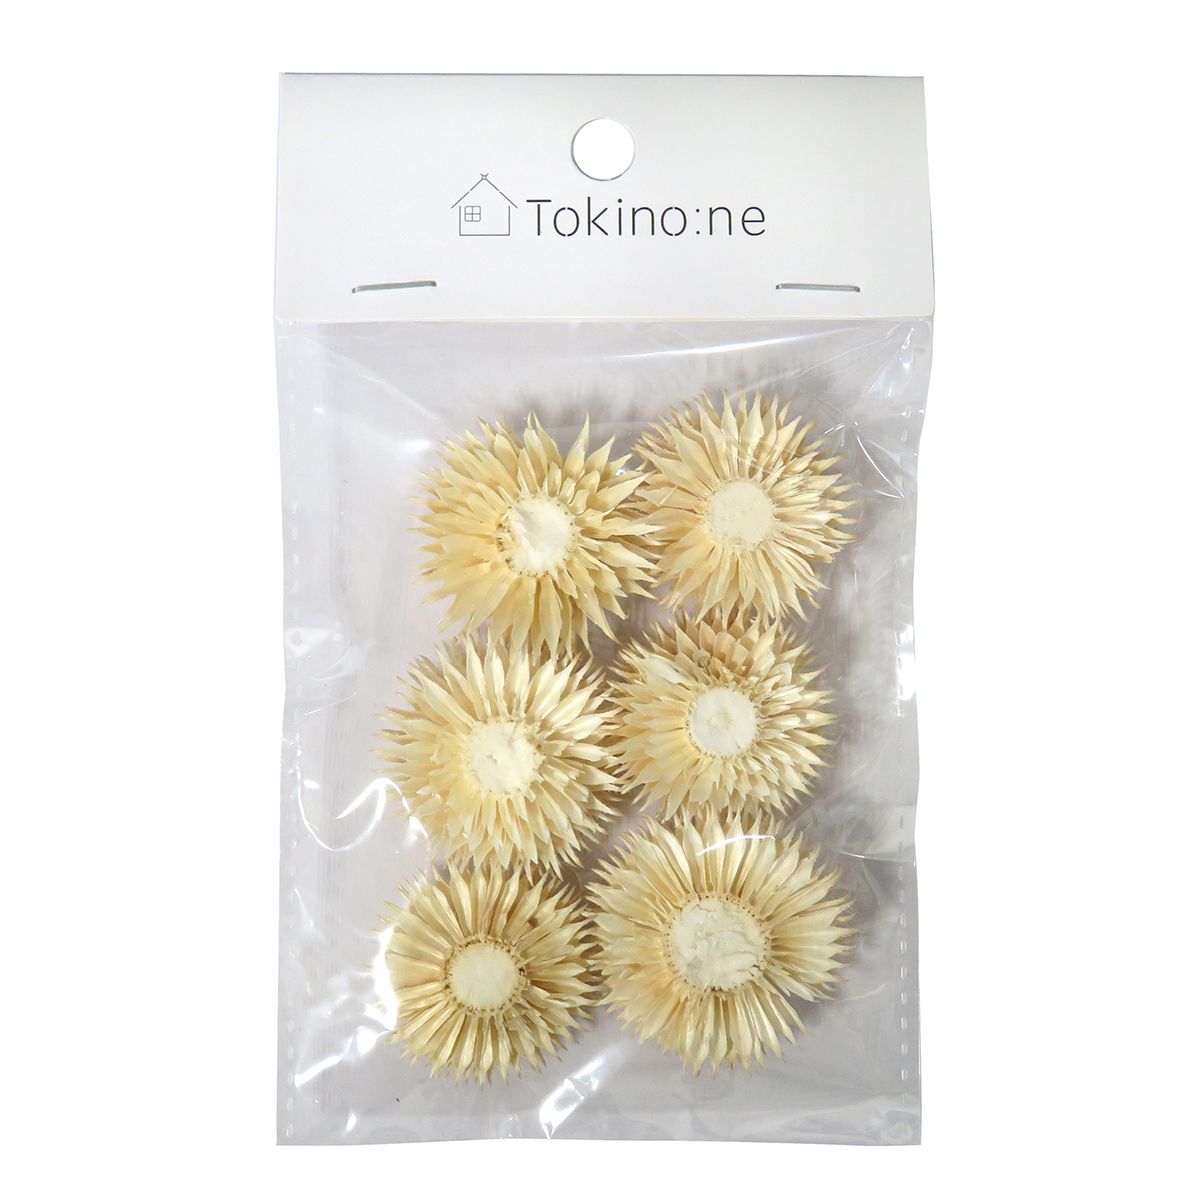 クリスマス リースパーツ リース装飾  Tokinone PB.デコレーションドライパーツ/チーゼルA  9001/054853